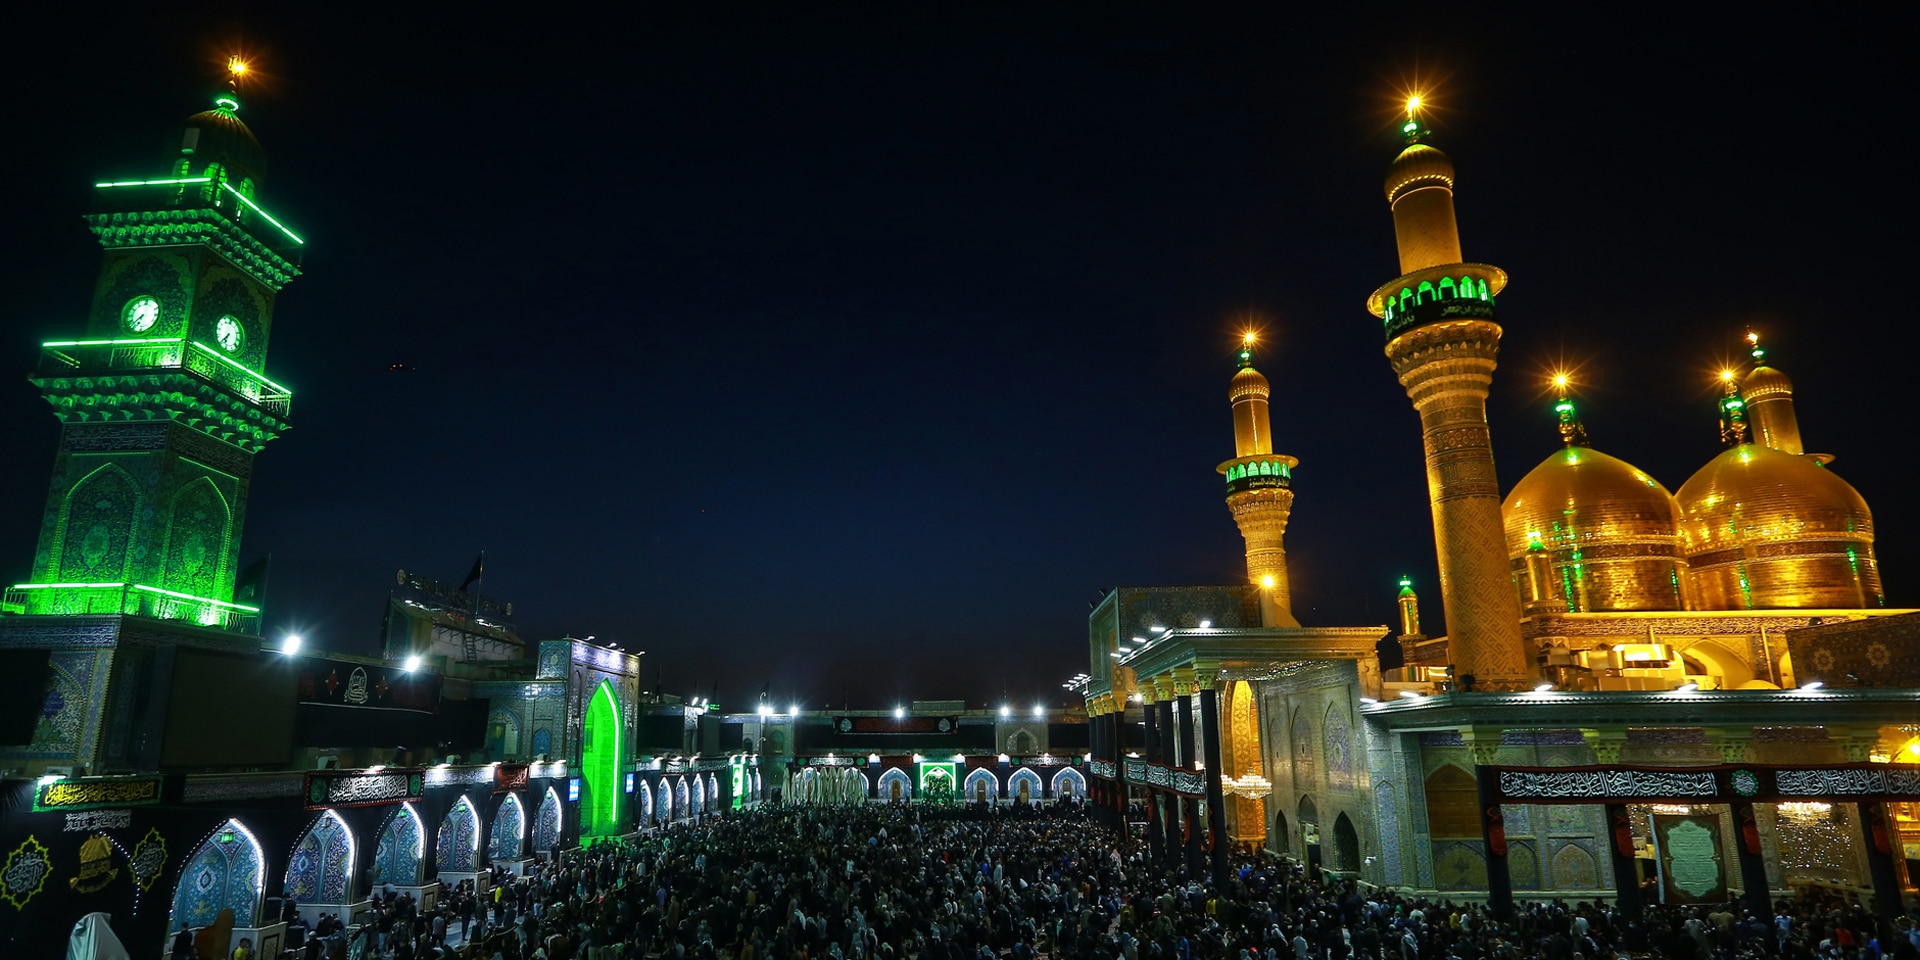 Immagine notturna di una moschea illuminata nella capitale irachena Bagdad.